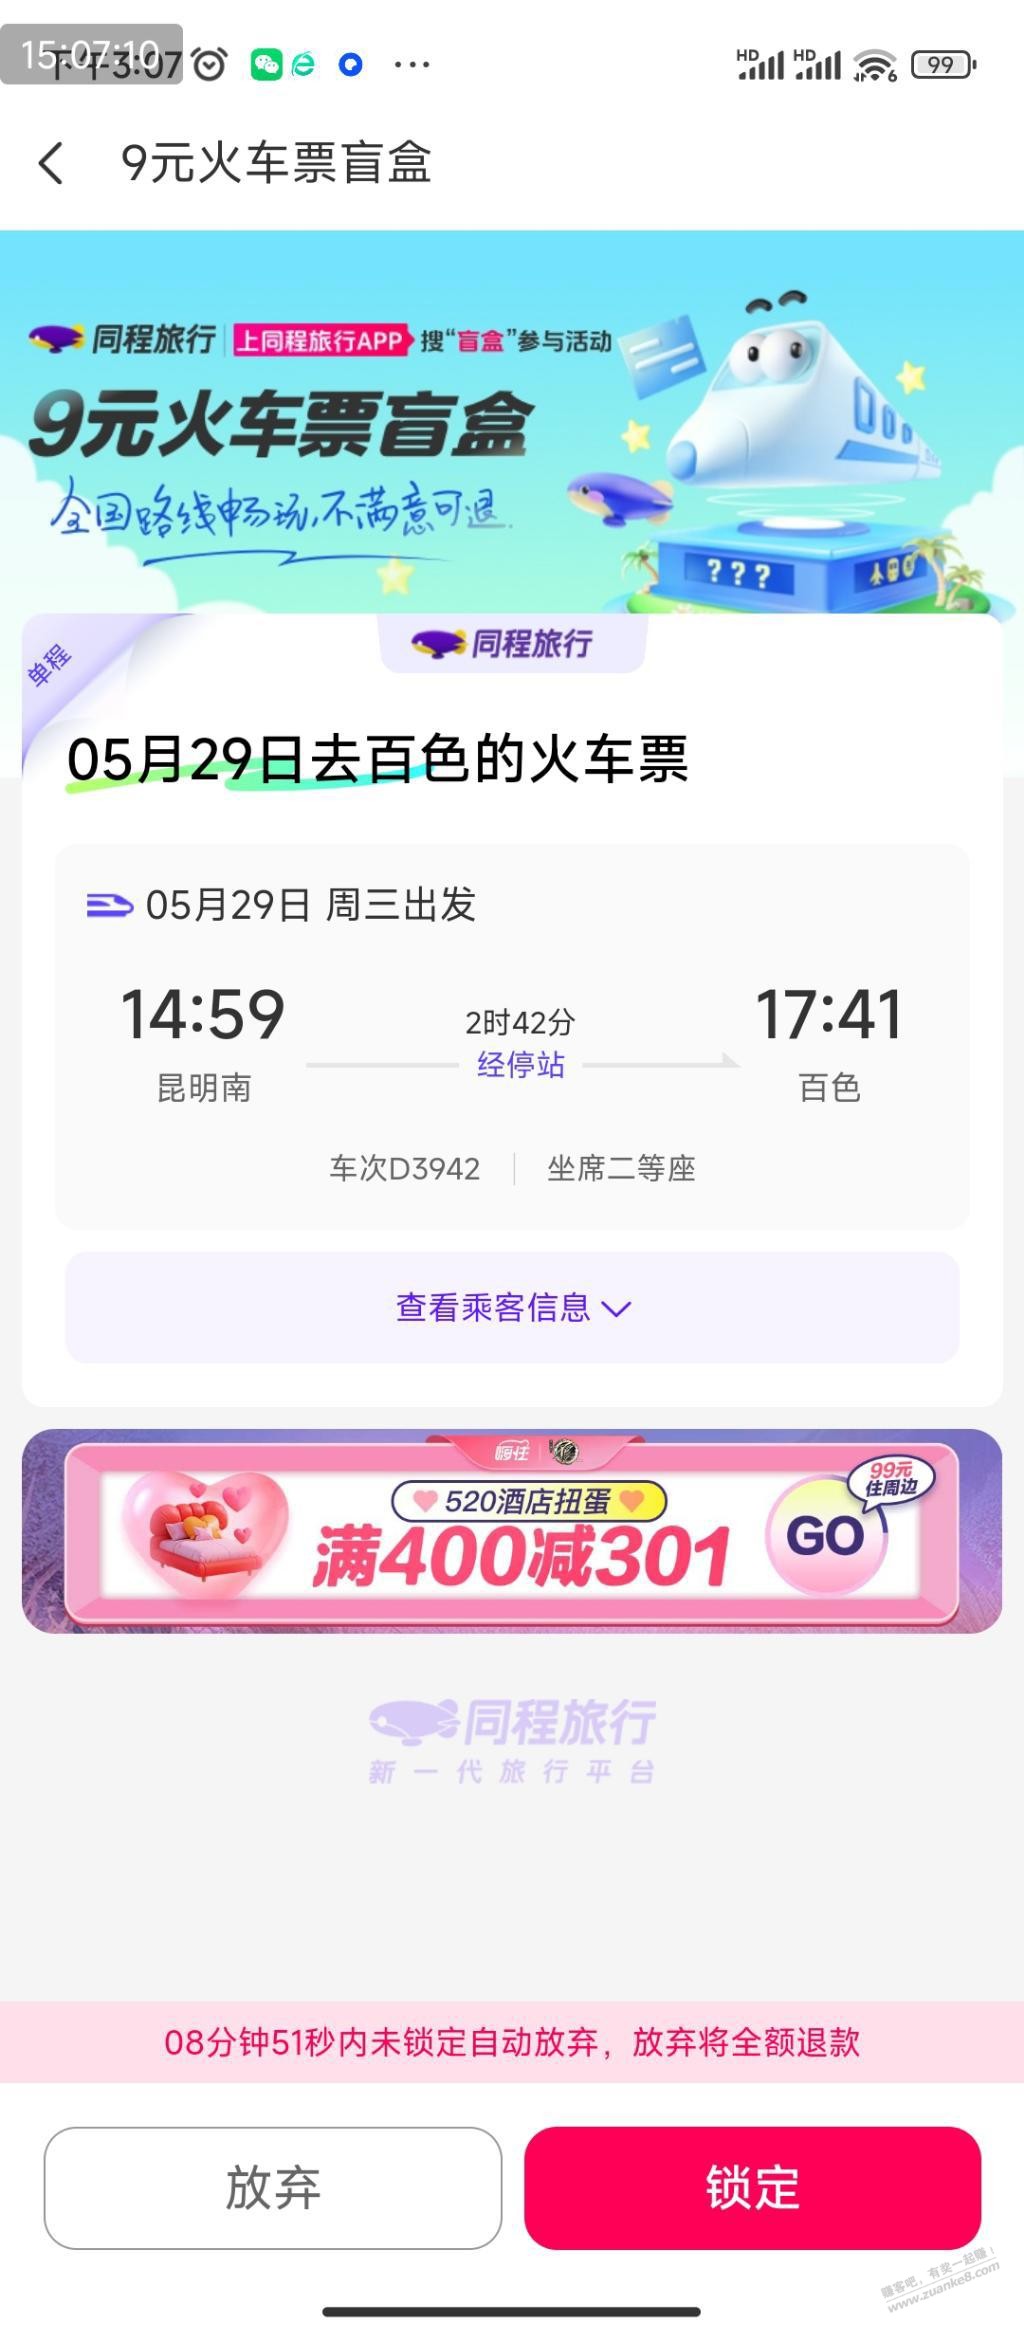 9元火车票盲盒抽到去百色-惠小助(52huixz.com)